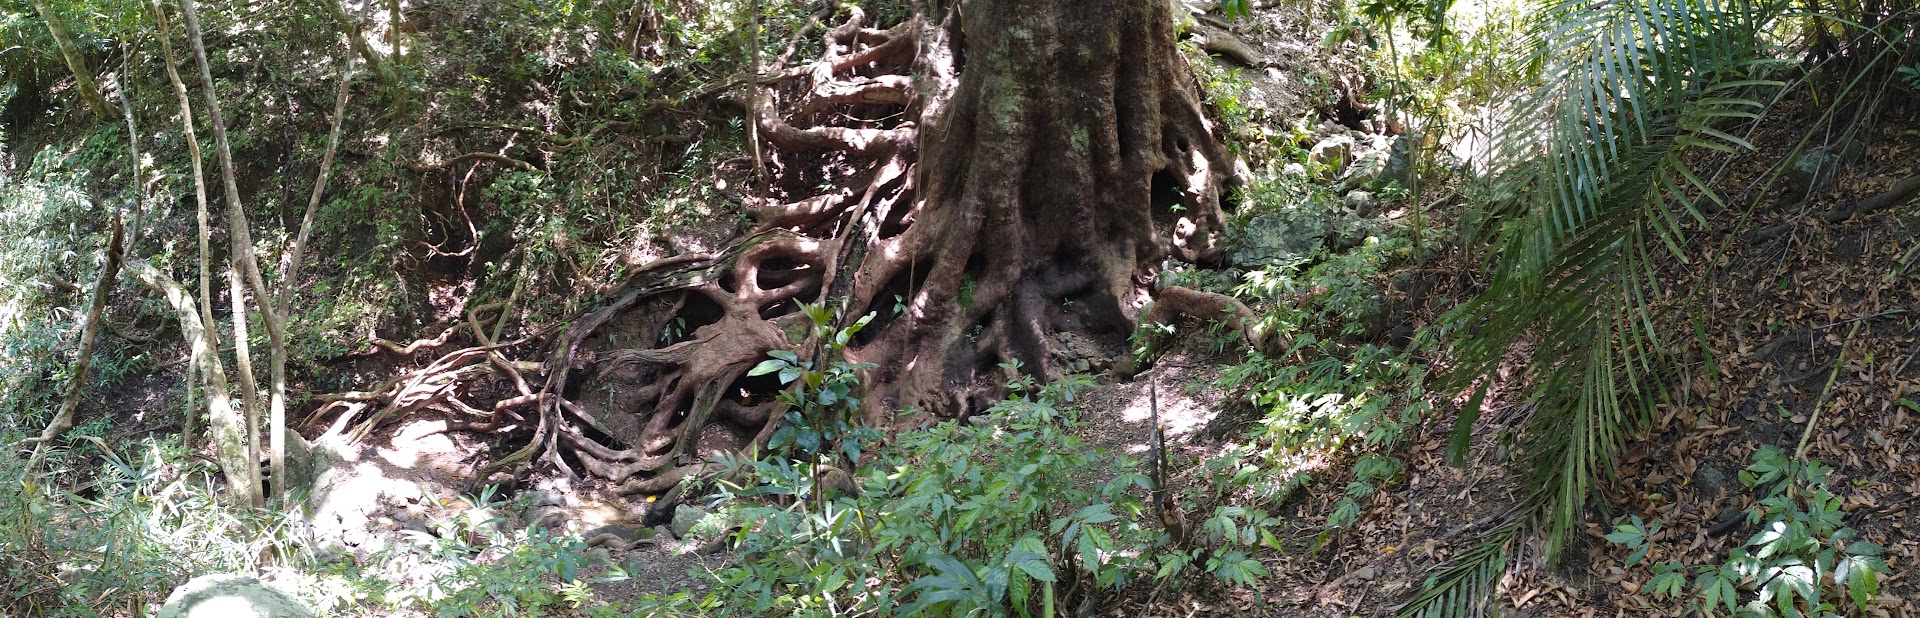 恆春試驗林高士佛試驗地中，根盤圓周達48公尺的茄苳巨木。